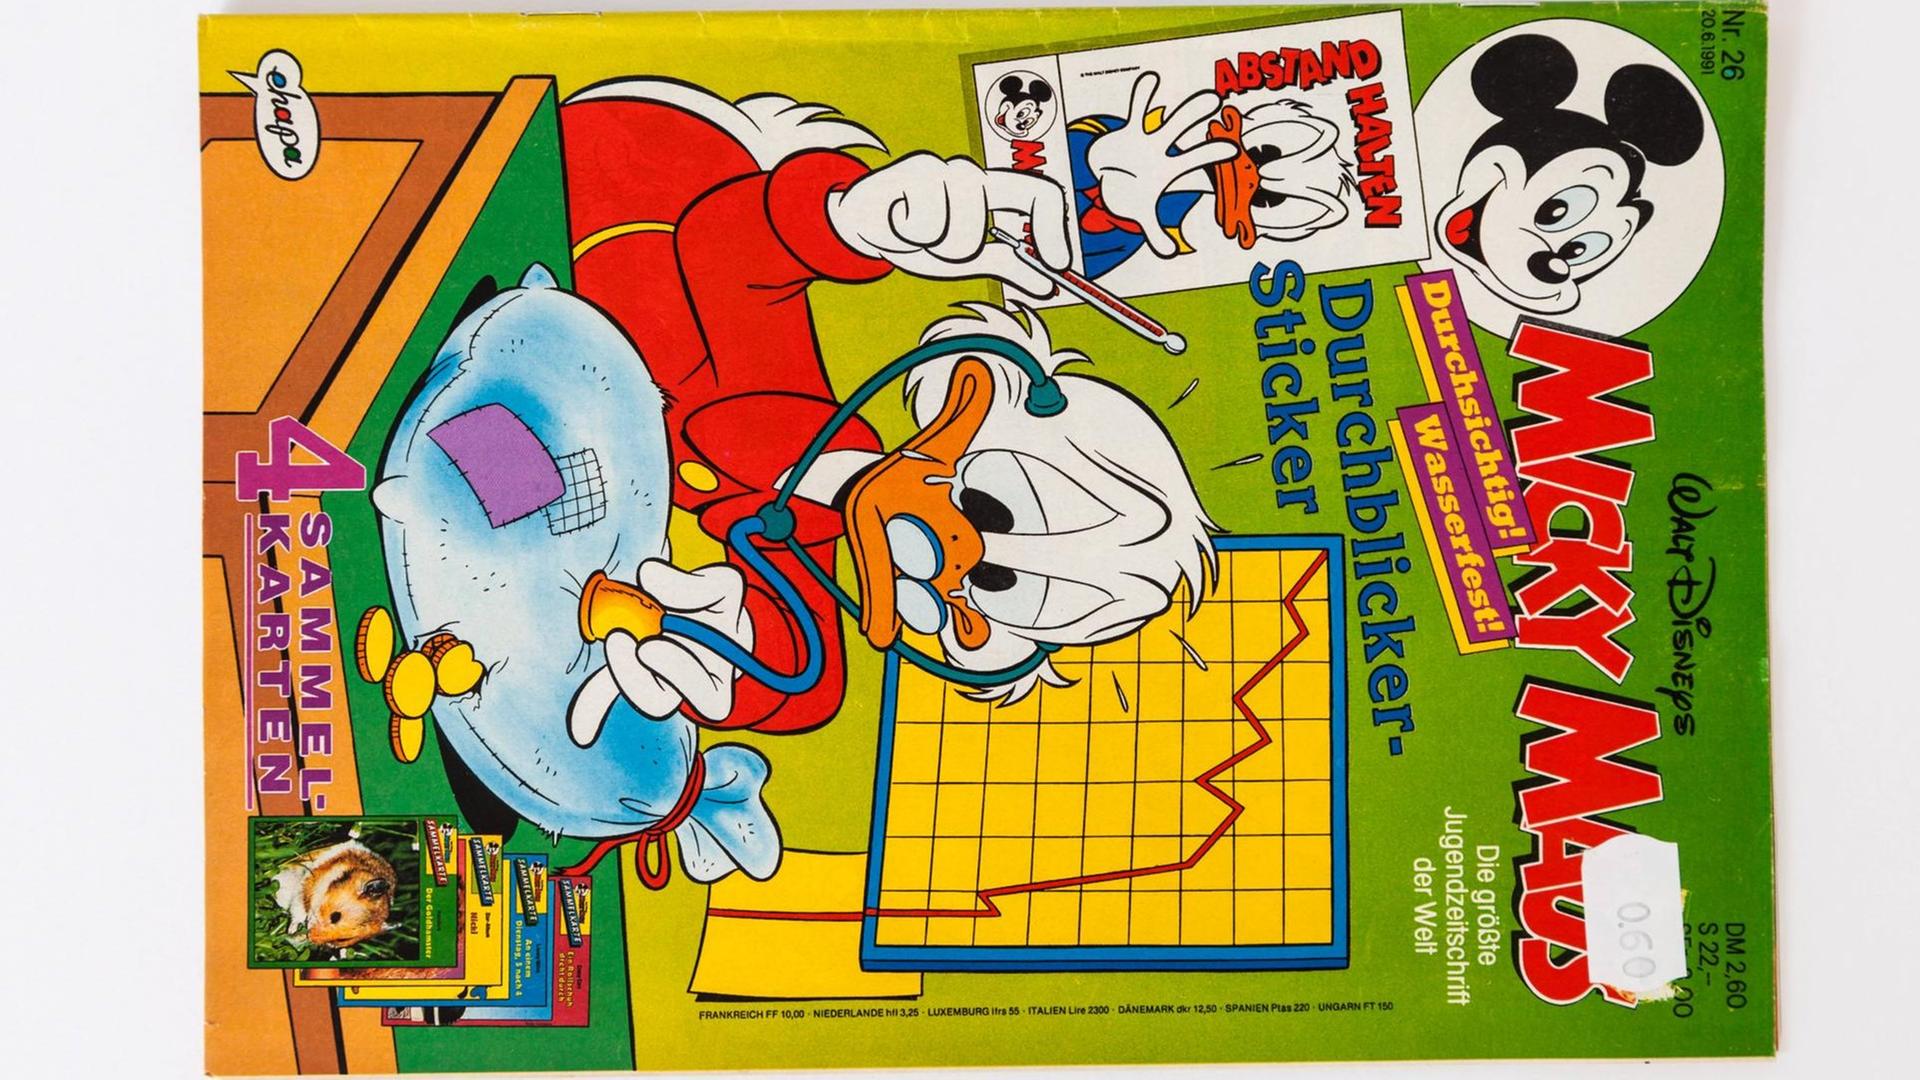 Das "Micky Maus"-Heft - hier eine Ausgabe von 1991, dem 40. Jubiläumsjahr der Comicreihe